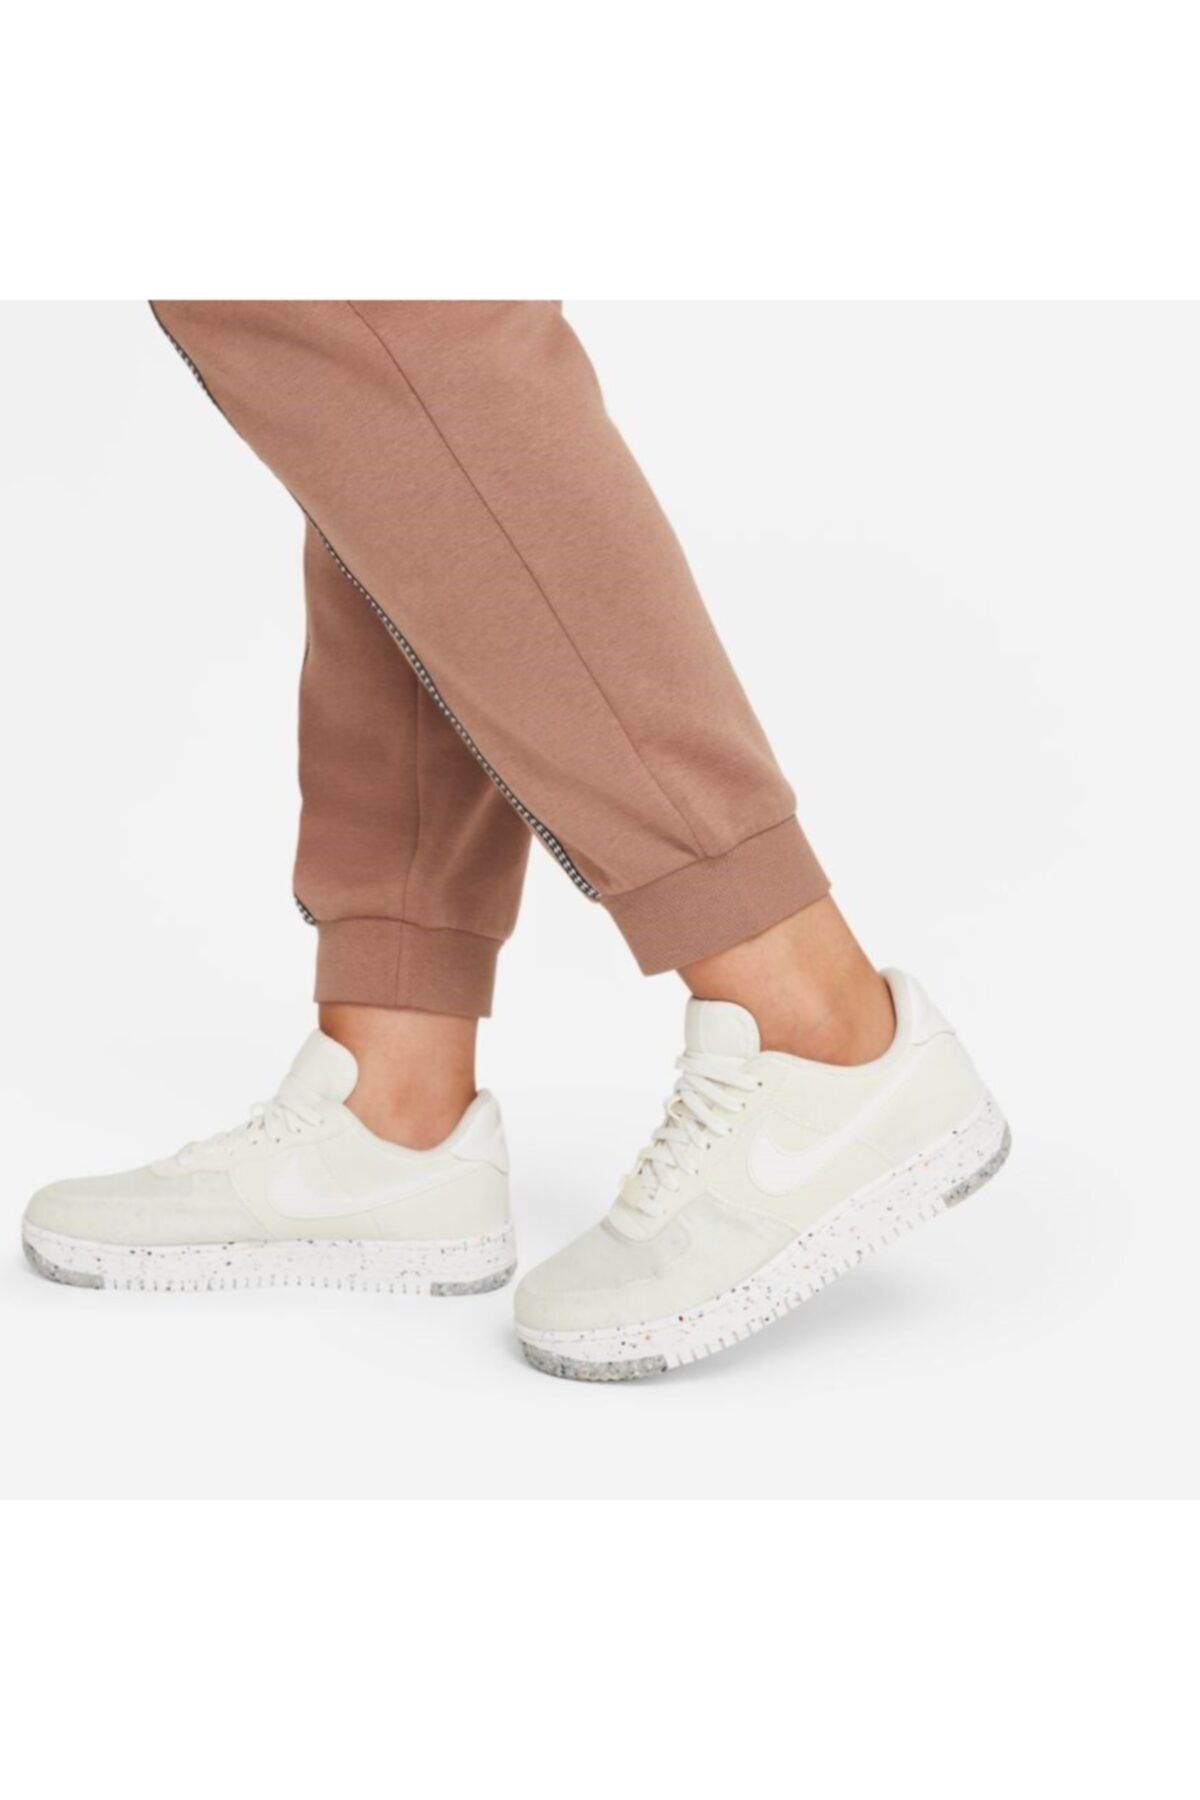 Nike Sweatpants - Brown - Trendyol